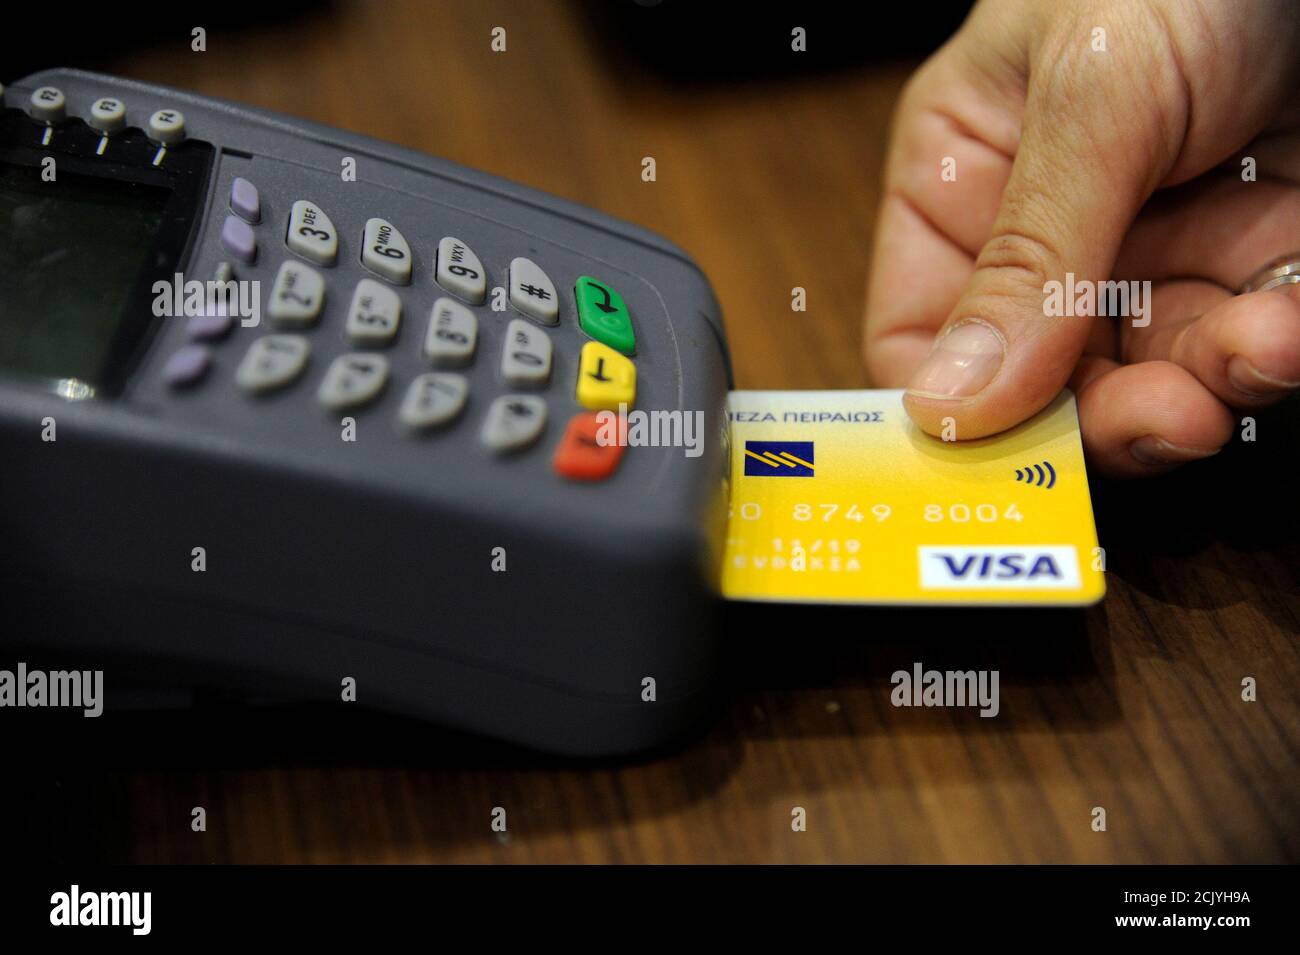 Il personale addetto alle vendite accetta il pagamento con carta di credito  tramite un dispositivo POS (Point-of-sale) presso un negozio boutique nel  centro di Atene, Grecia, il 10 maggio 2016. Foto scattata